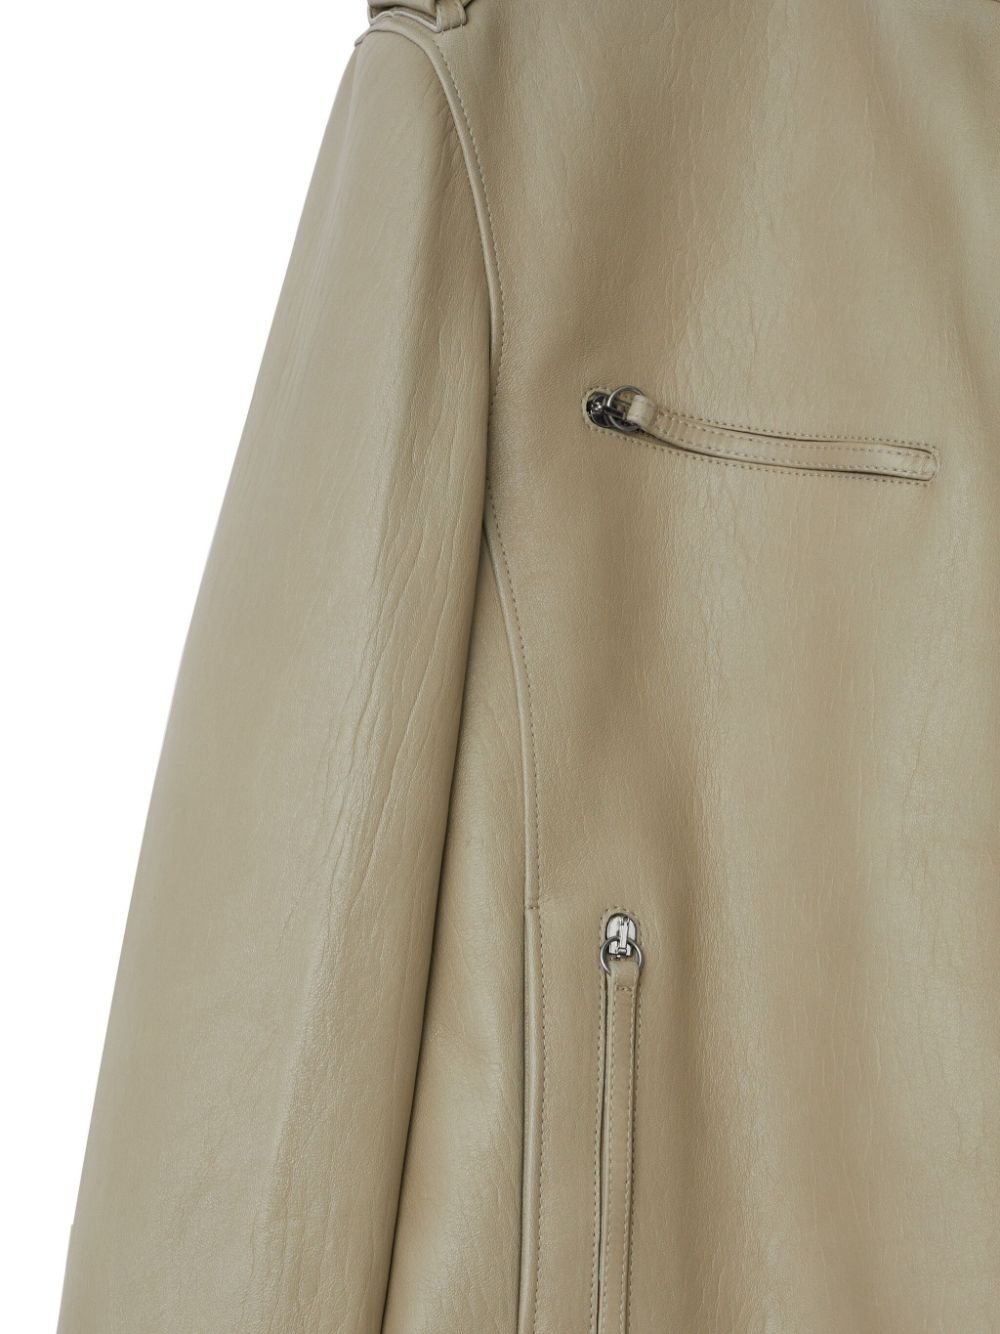 leather jacket - 3